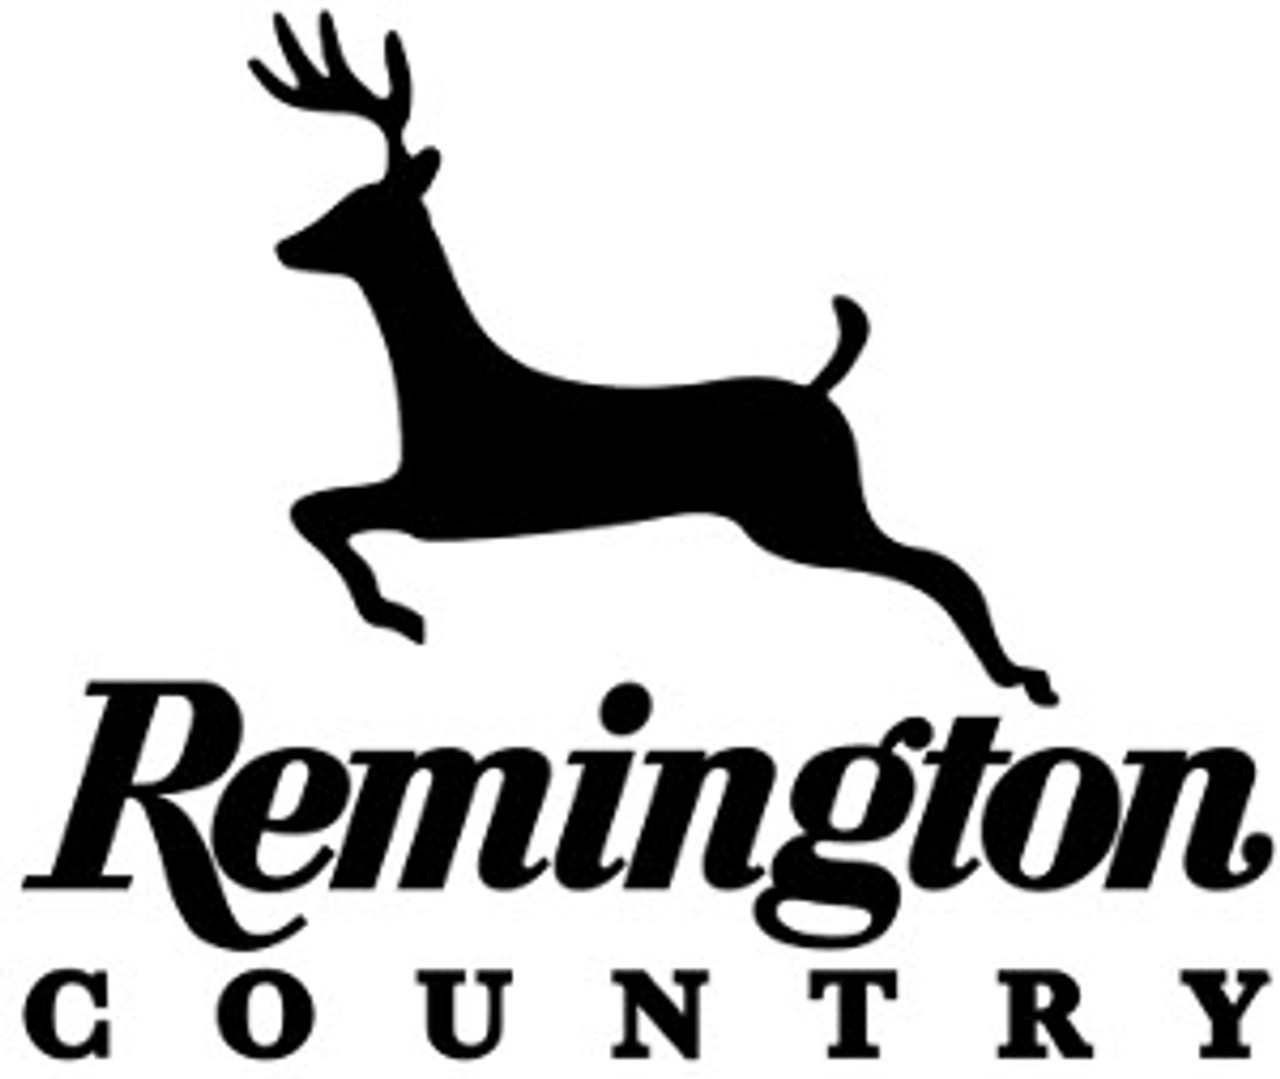 remington deer logo